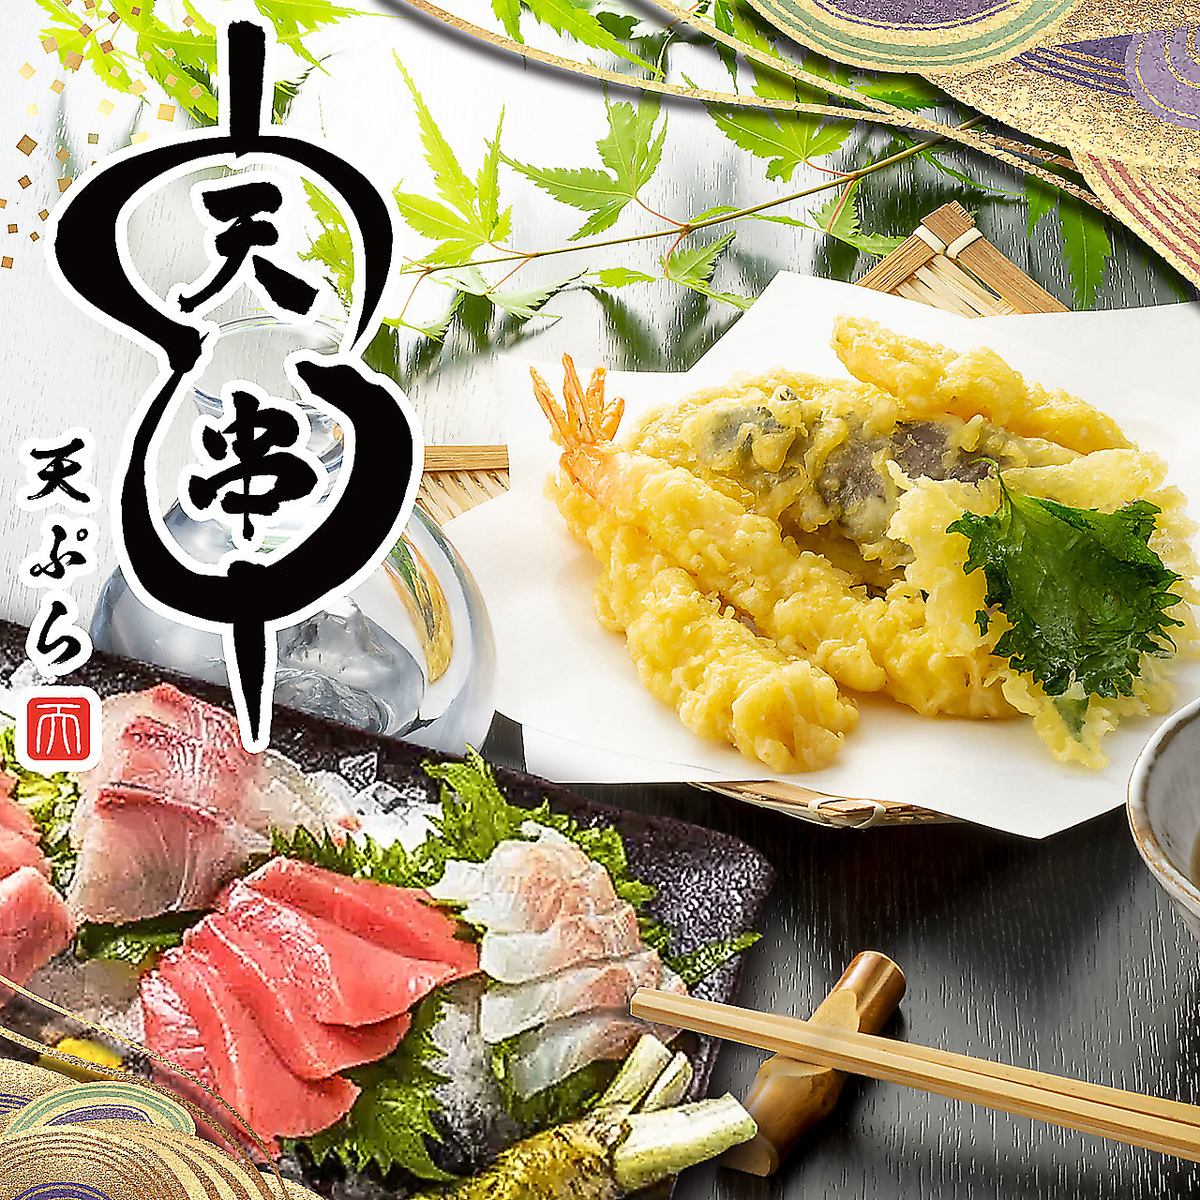 请尽情享用时令鲜鱼、日本酒和葡萄酒吧！还有多种无限畅饮套餐。